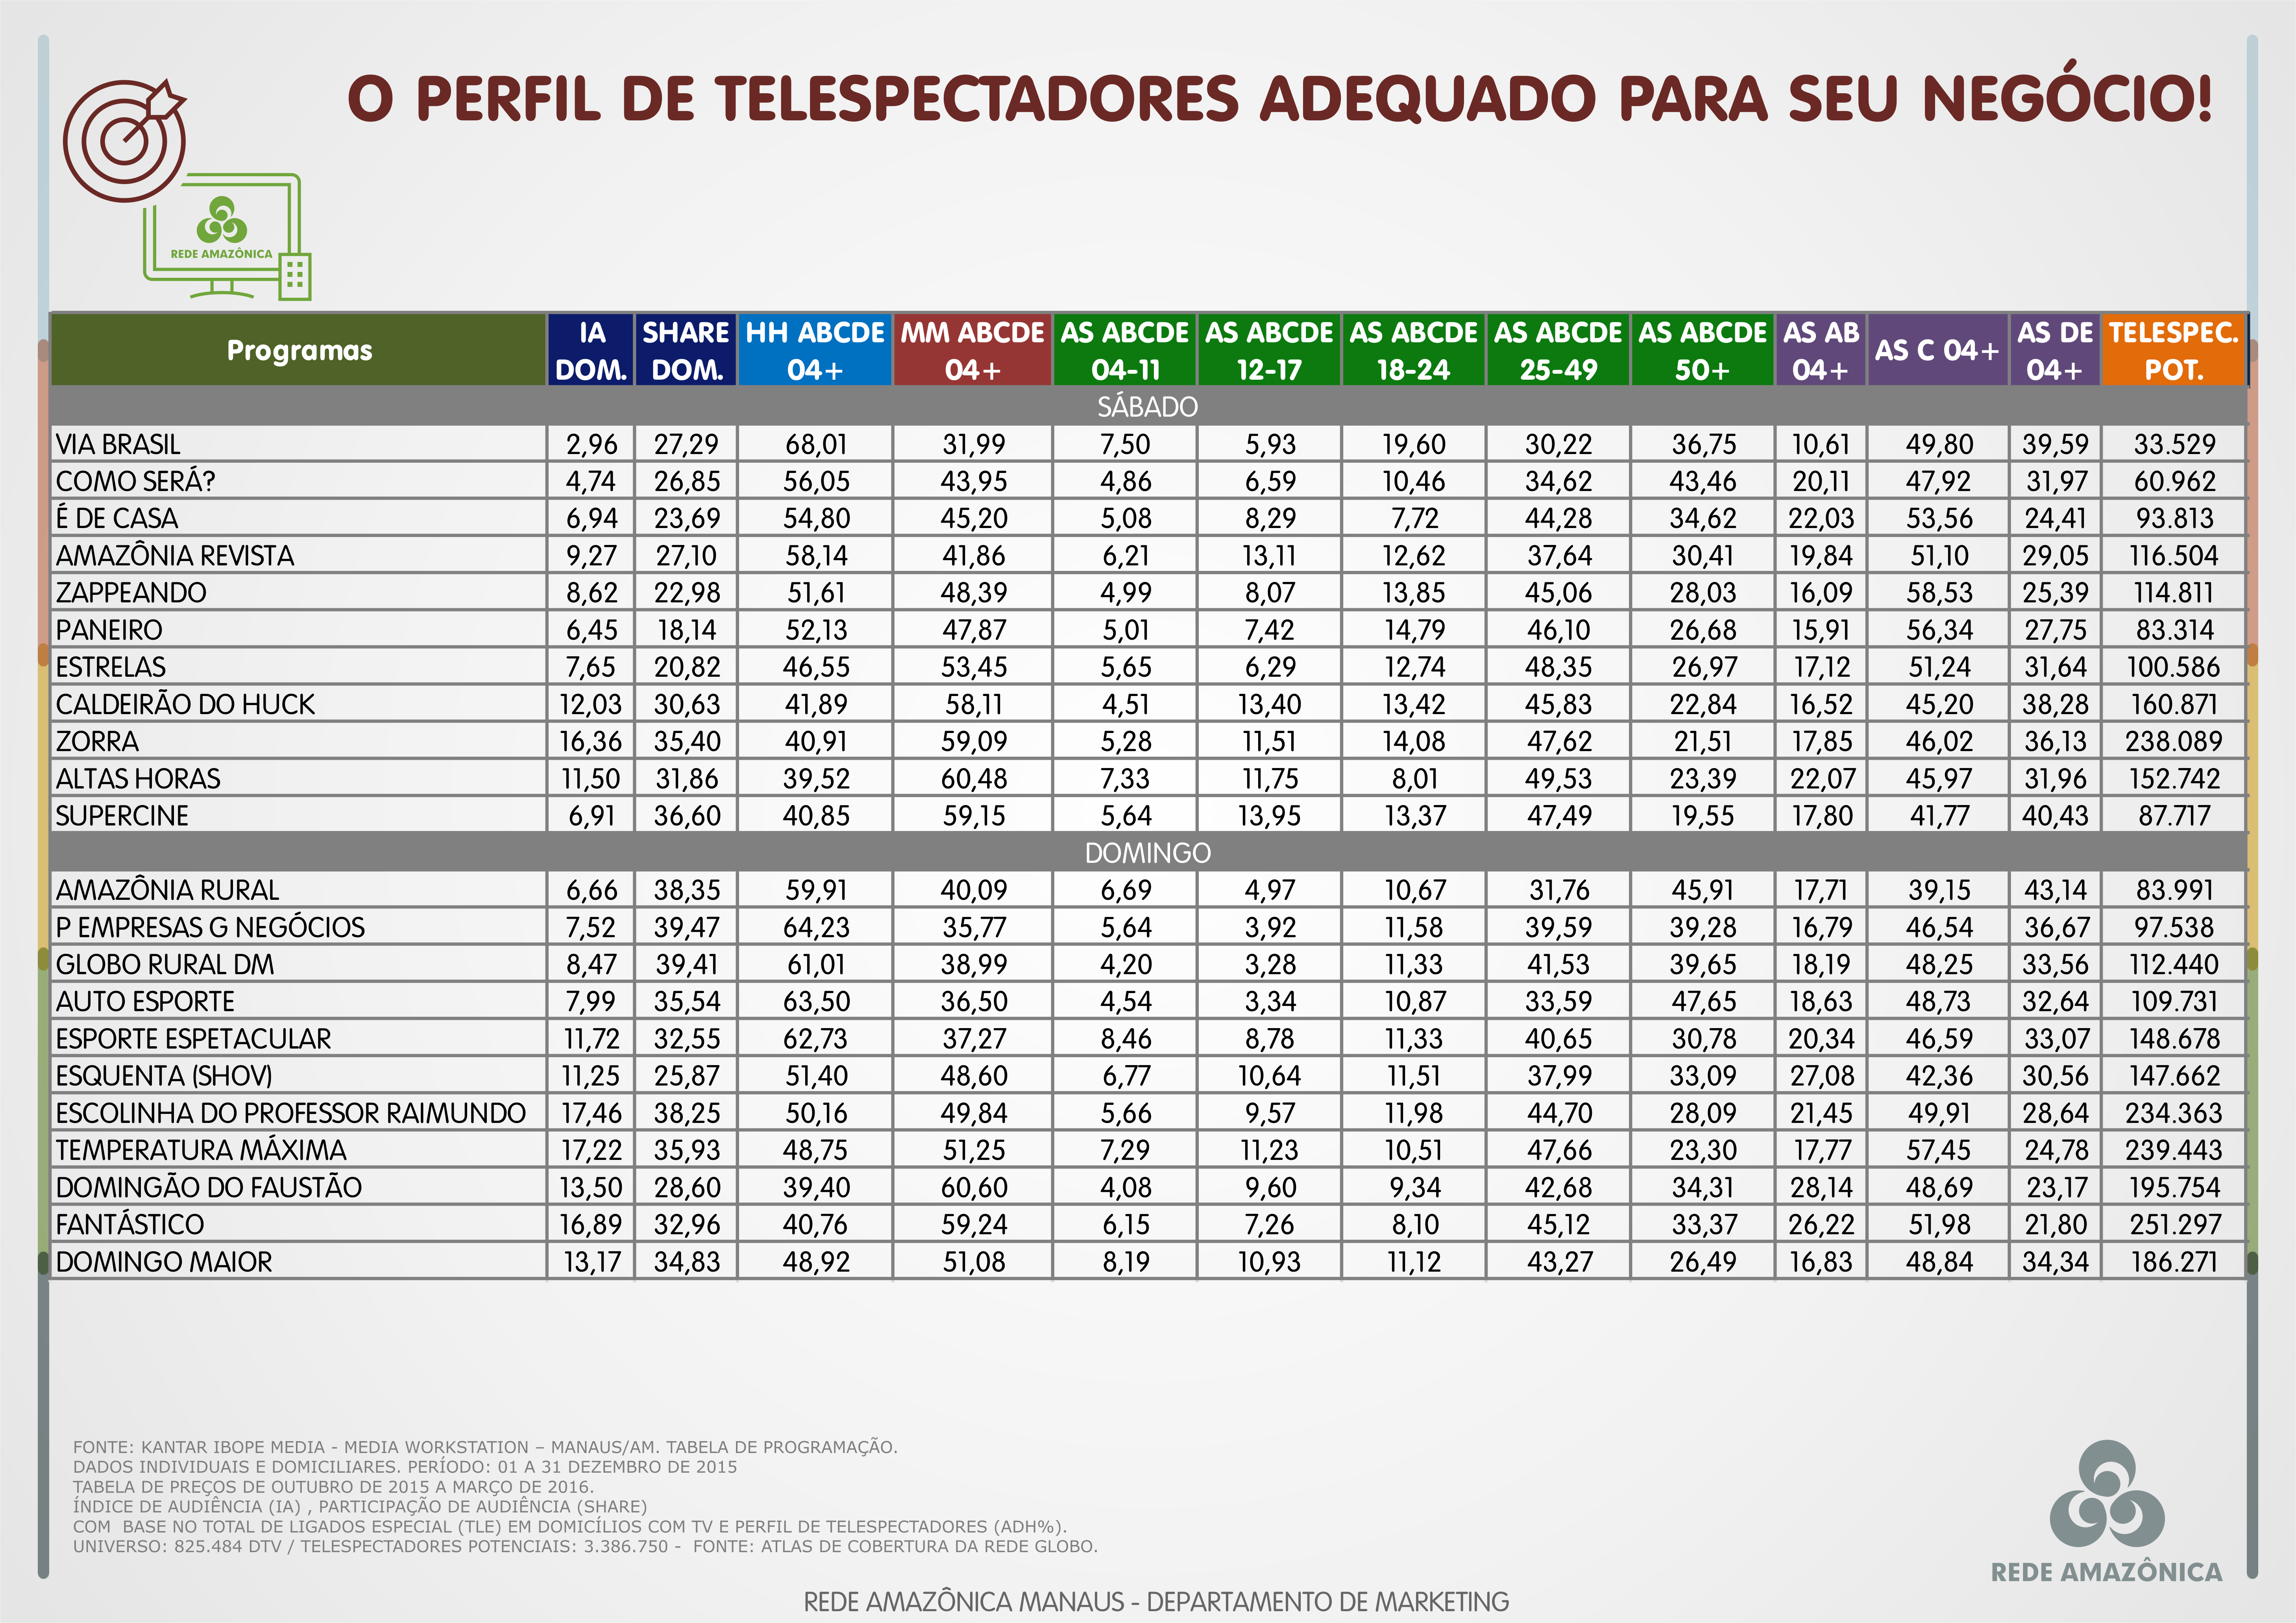 Confira o perfil de telespectadores da Rede Amazônica em dezembro/2015 (Foto: Rede Amazônica)